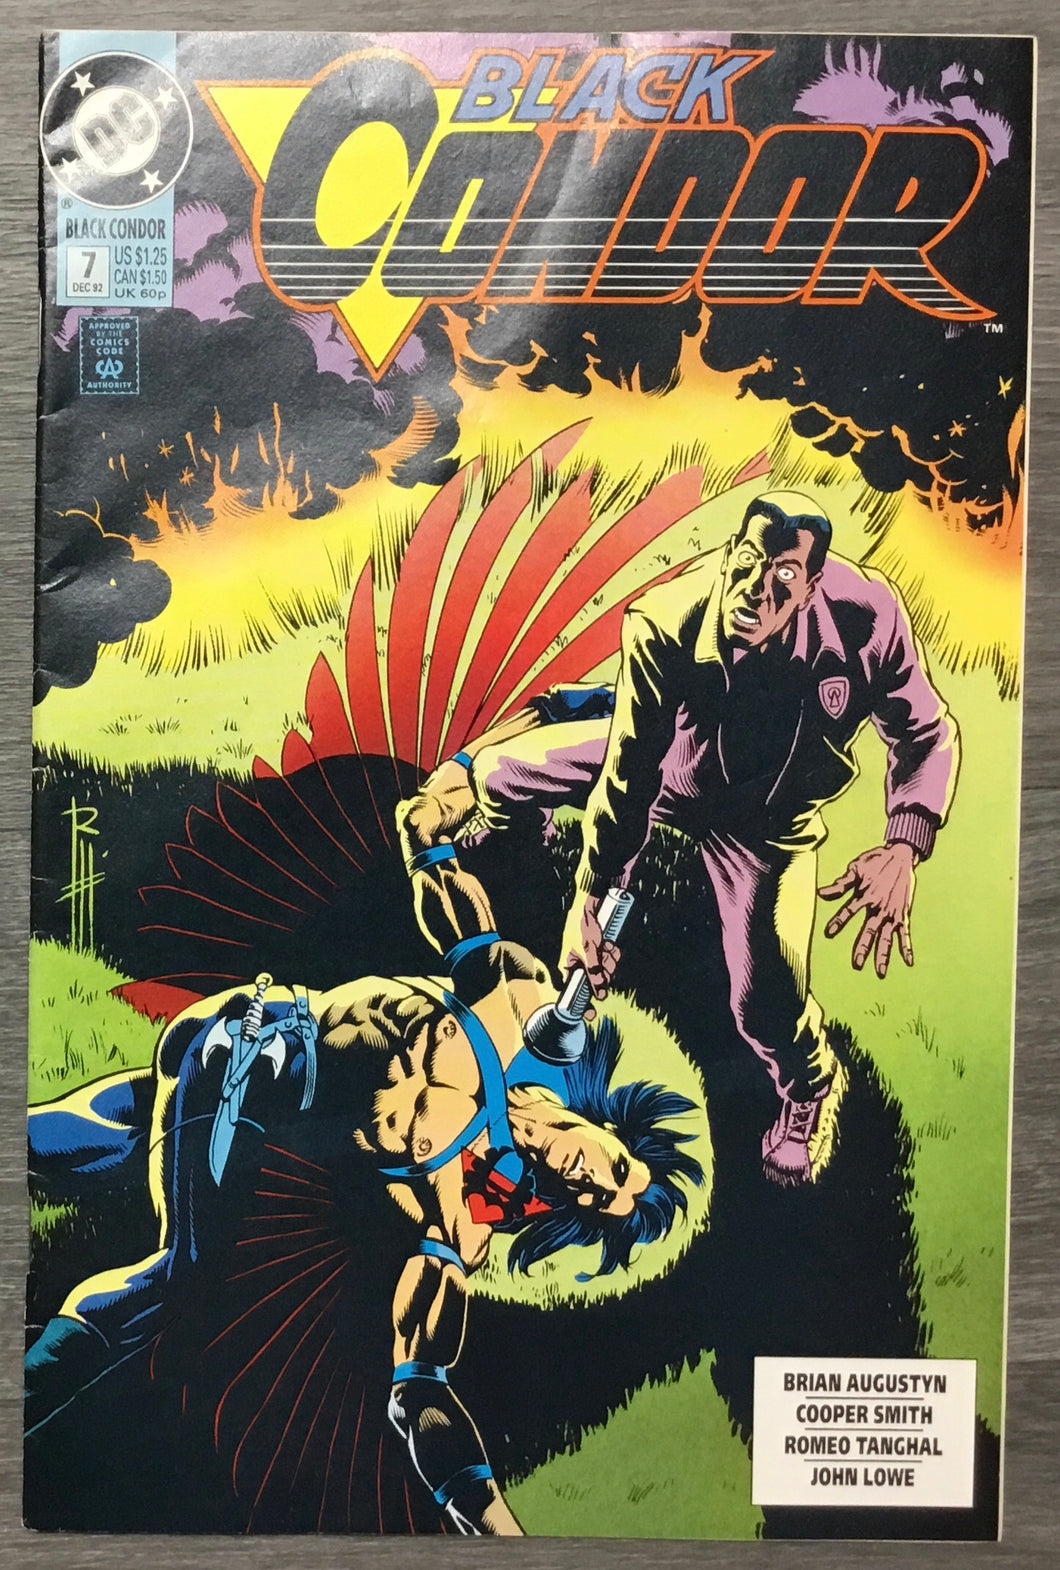 Black Condor No. #7 1992 DC Comics